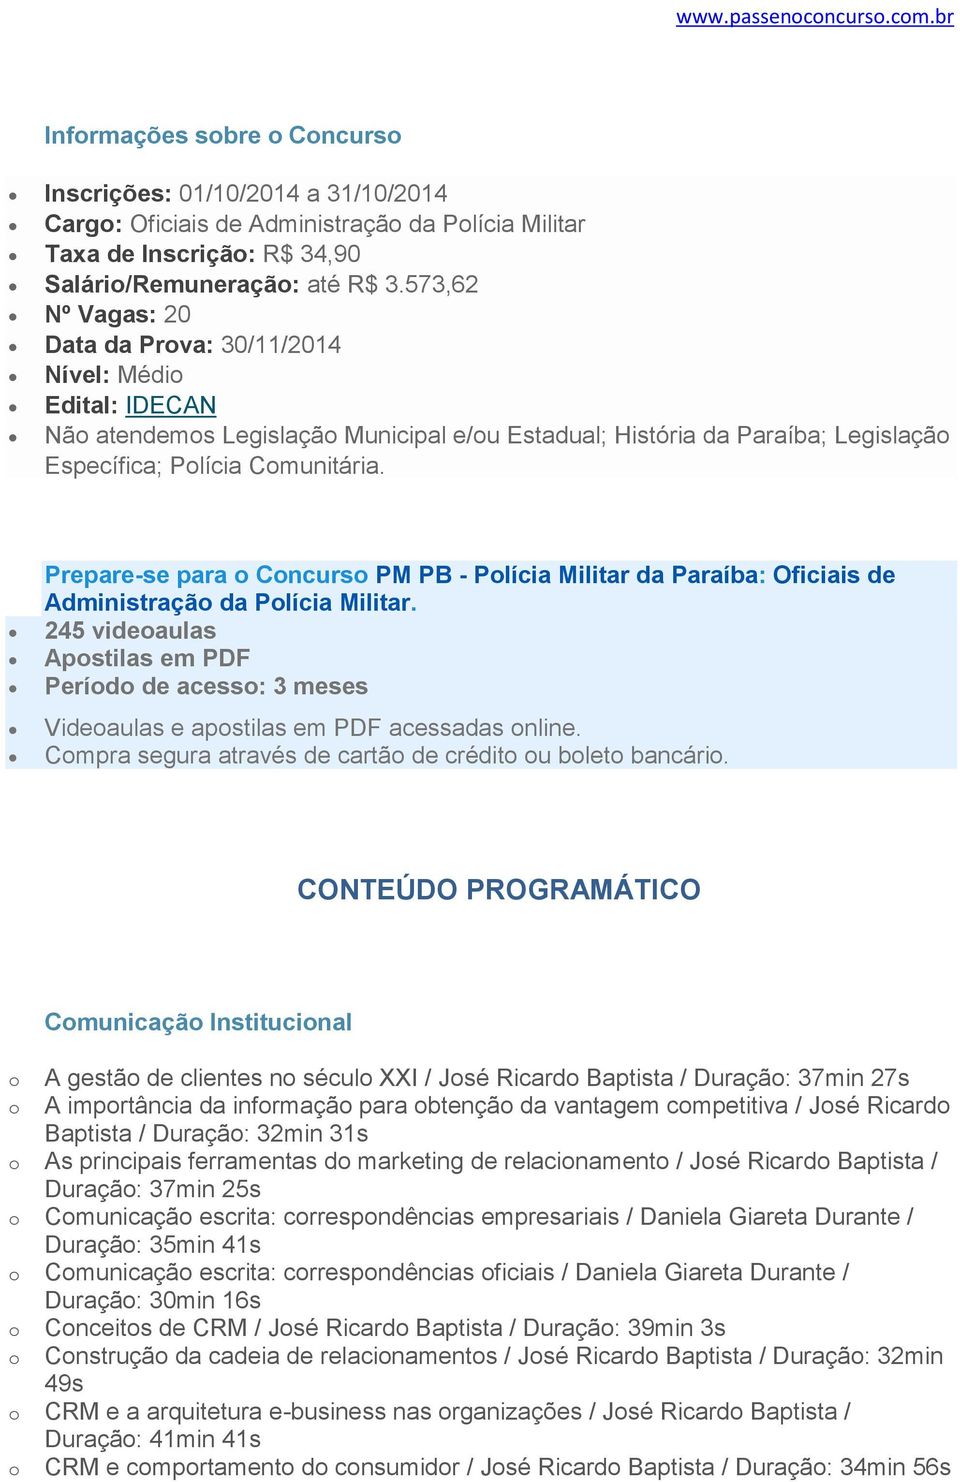 RE-SE Prepare-se para Cncurs PM PB - Plícia Militar da Paraíba: Oficiais de Administraçã da Plícia Militar.